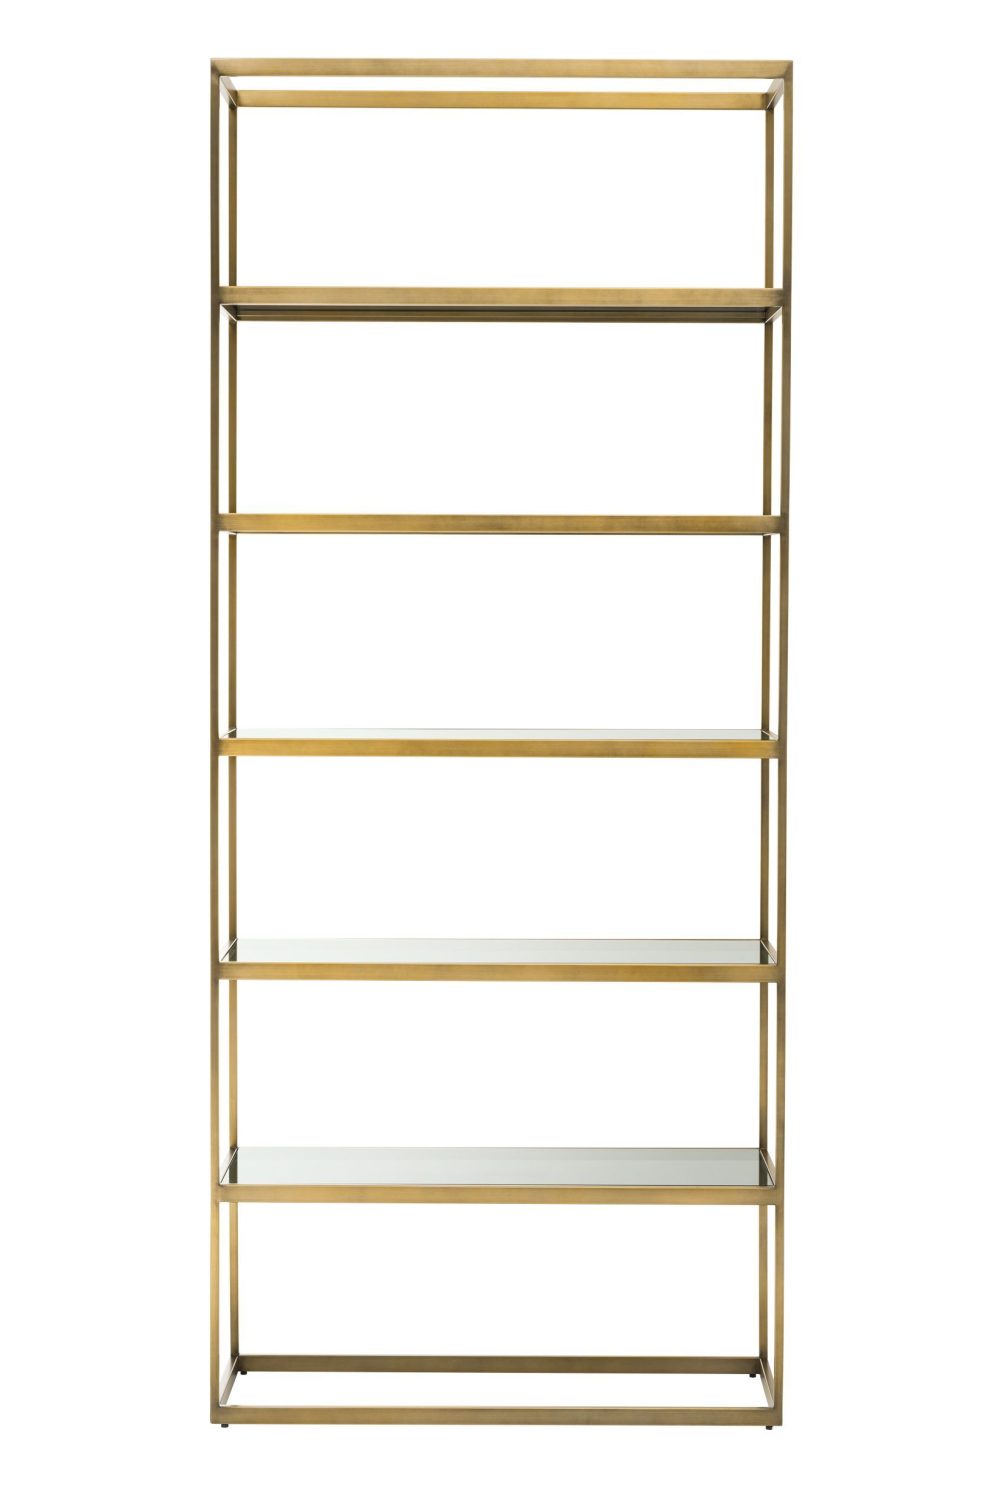 5 Shelf Brass Cabinet | Eichholtz Omega | OROA.com